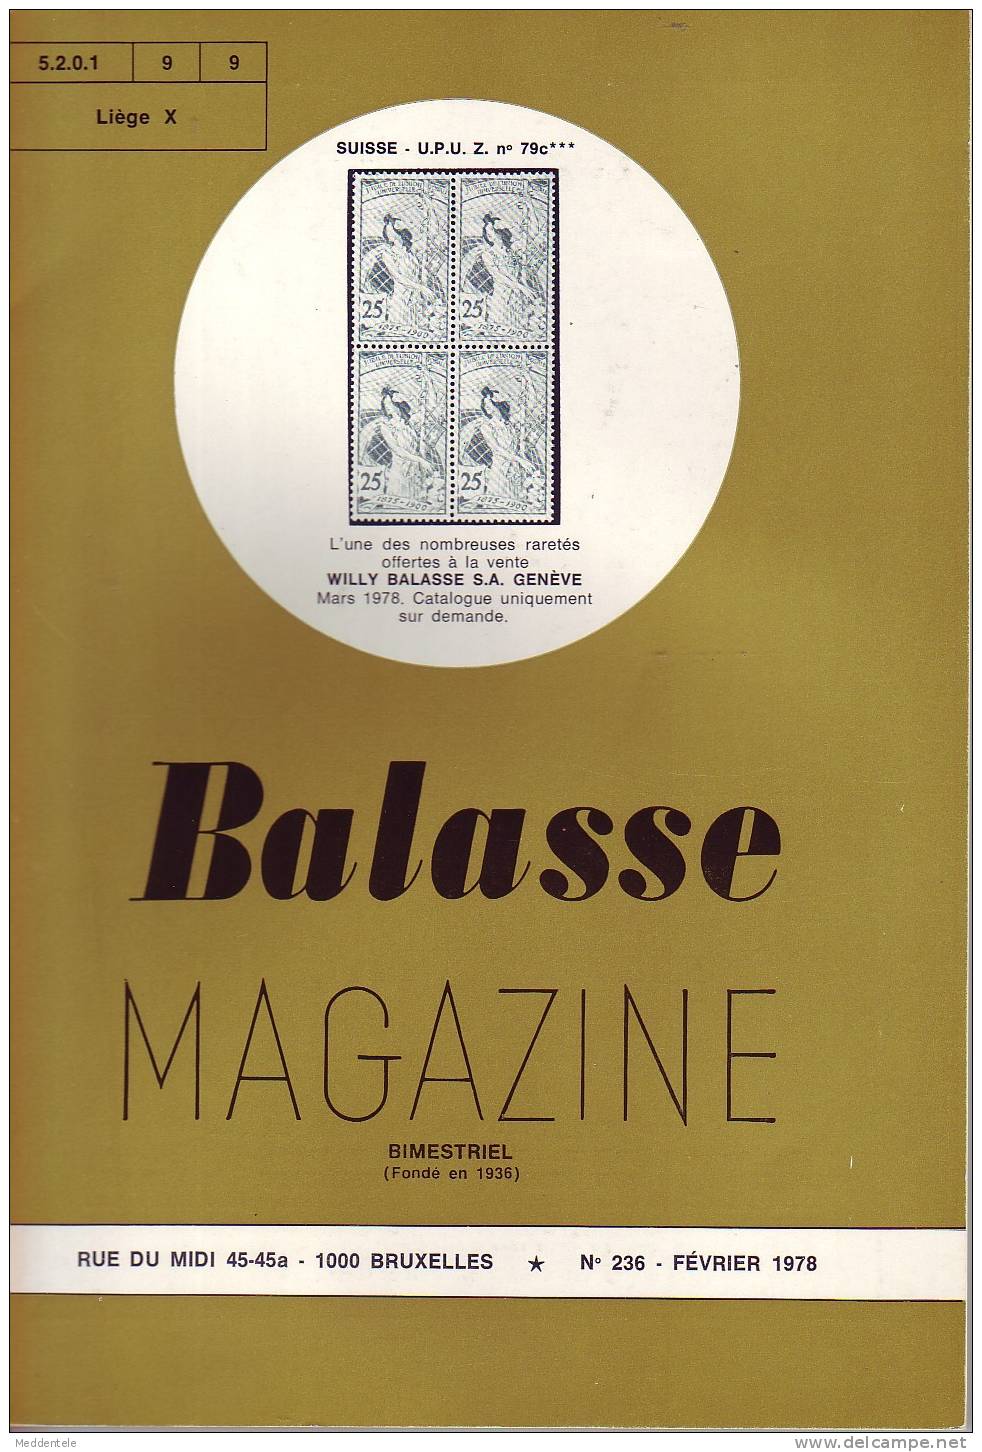 BALASSE MAGAZINE N° 236 - Français (àpd. 1941)